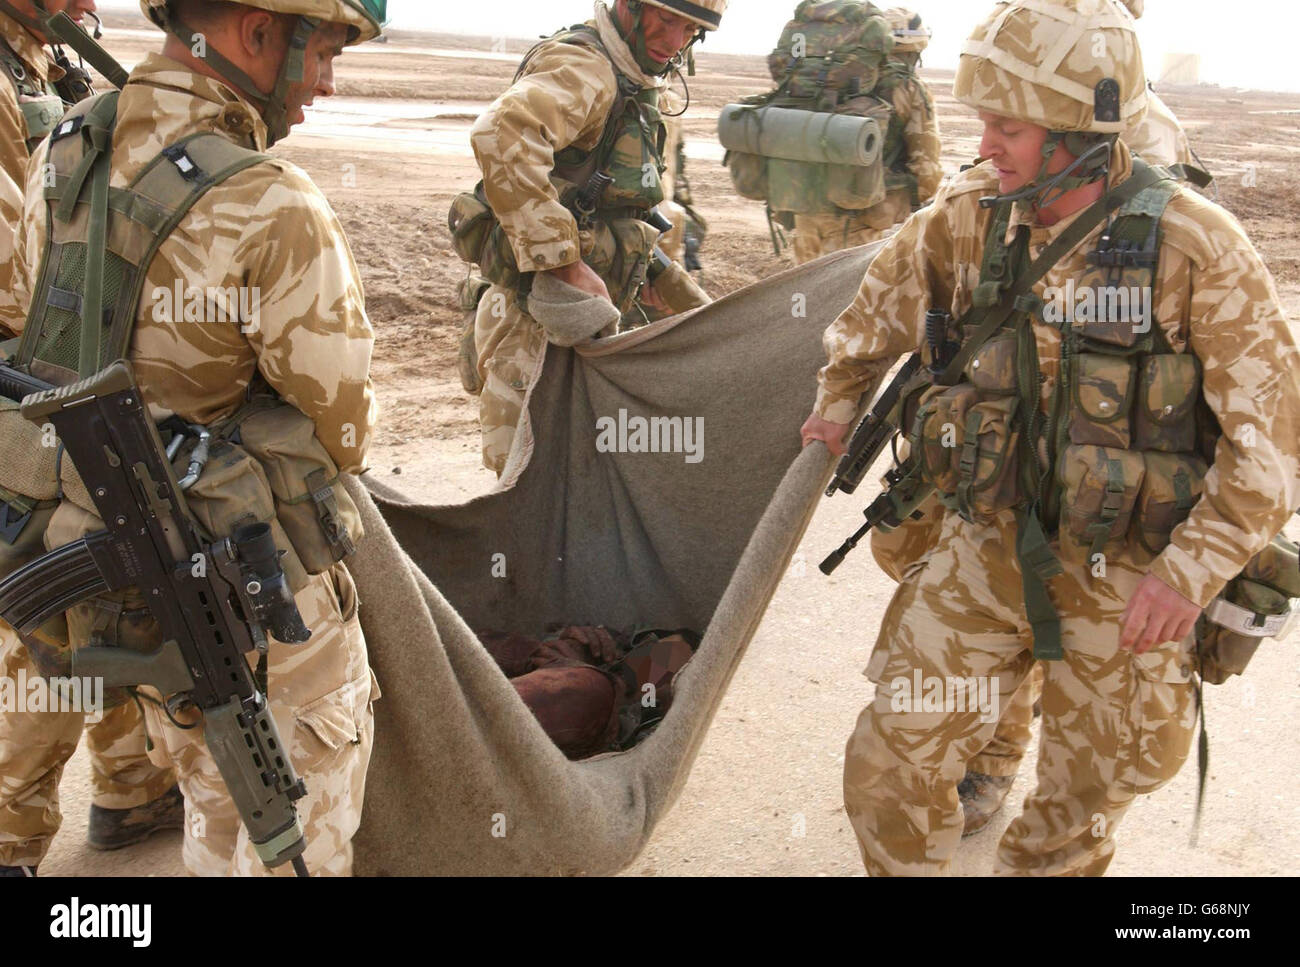 Royal Marine Commando von 40 Commando Royal Marines evakuiert heute Morgen einen schwer verletzten irakischen Soldaten auf dem Al Faw Peninisular. Stockfoto